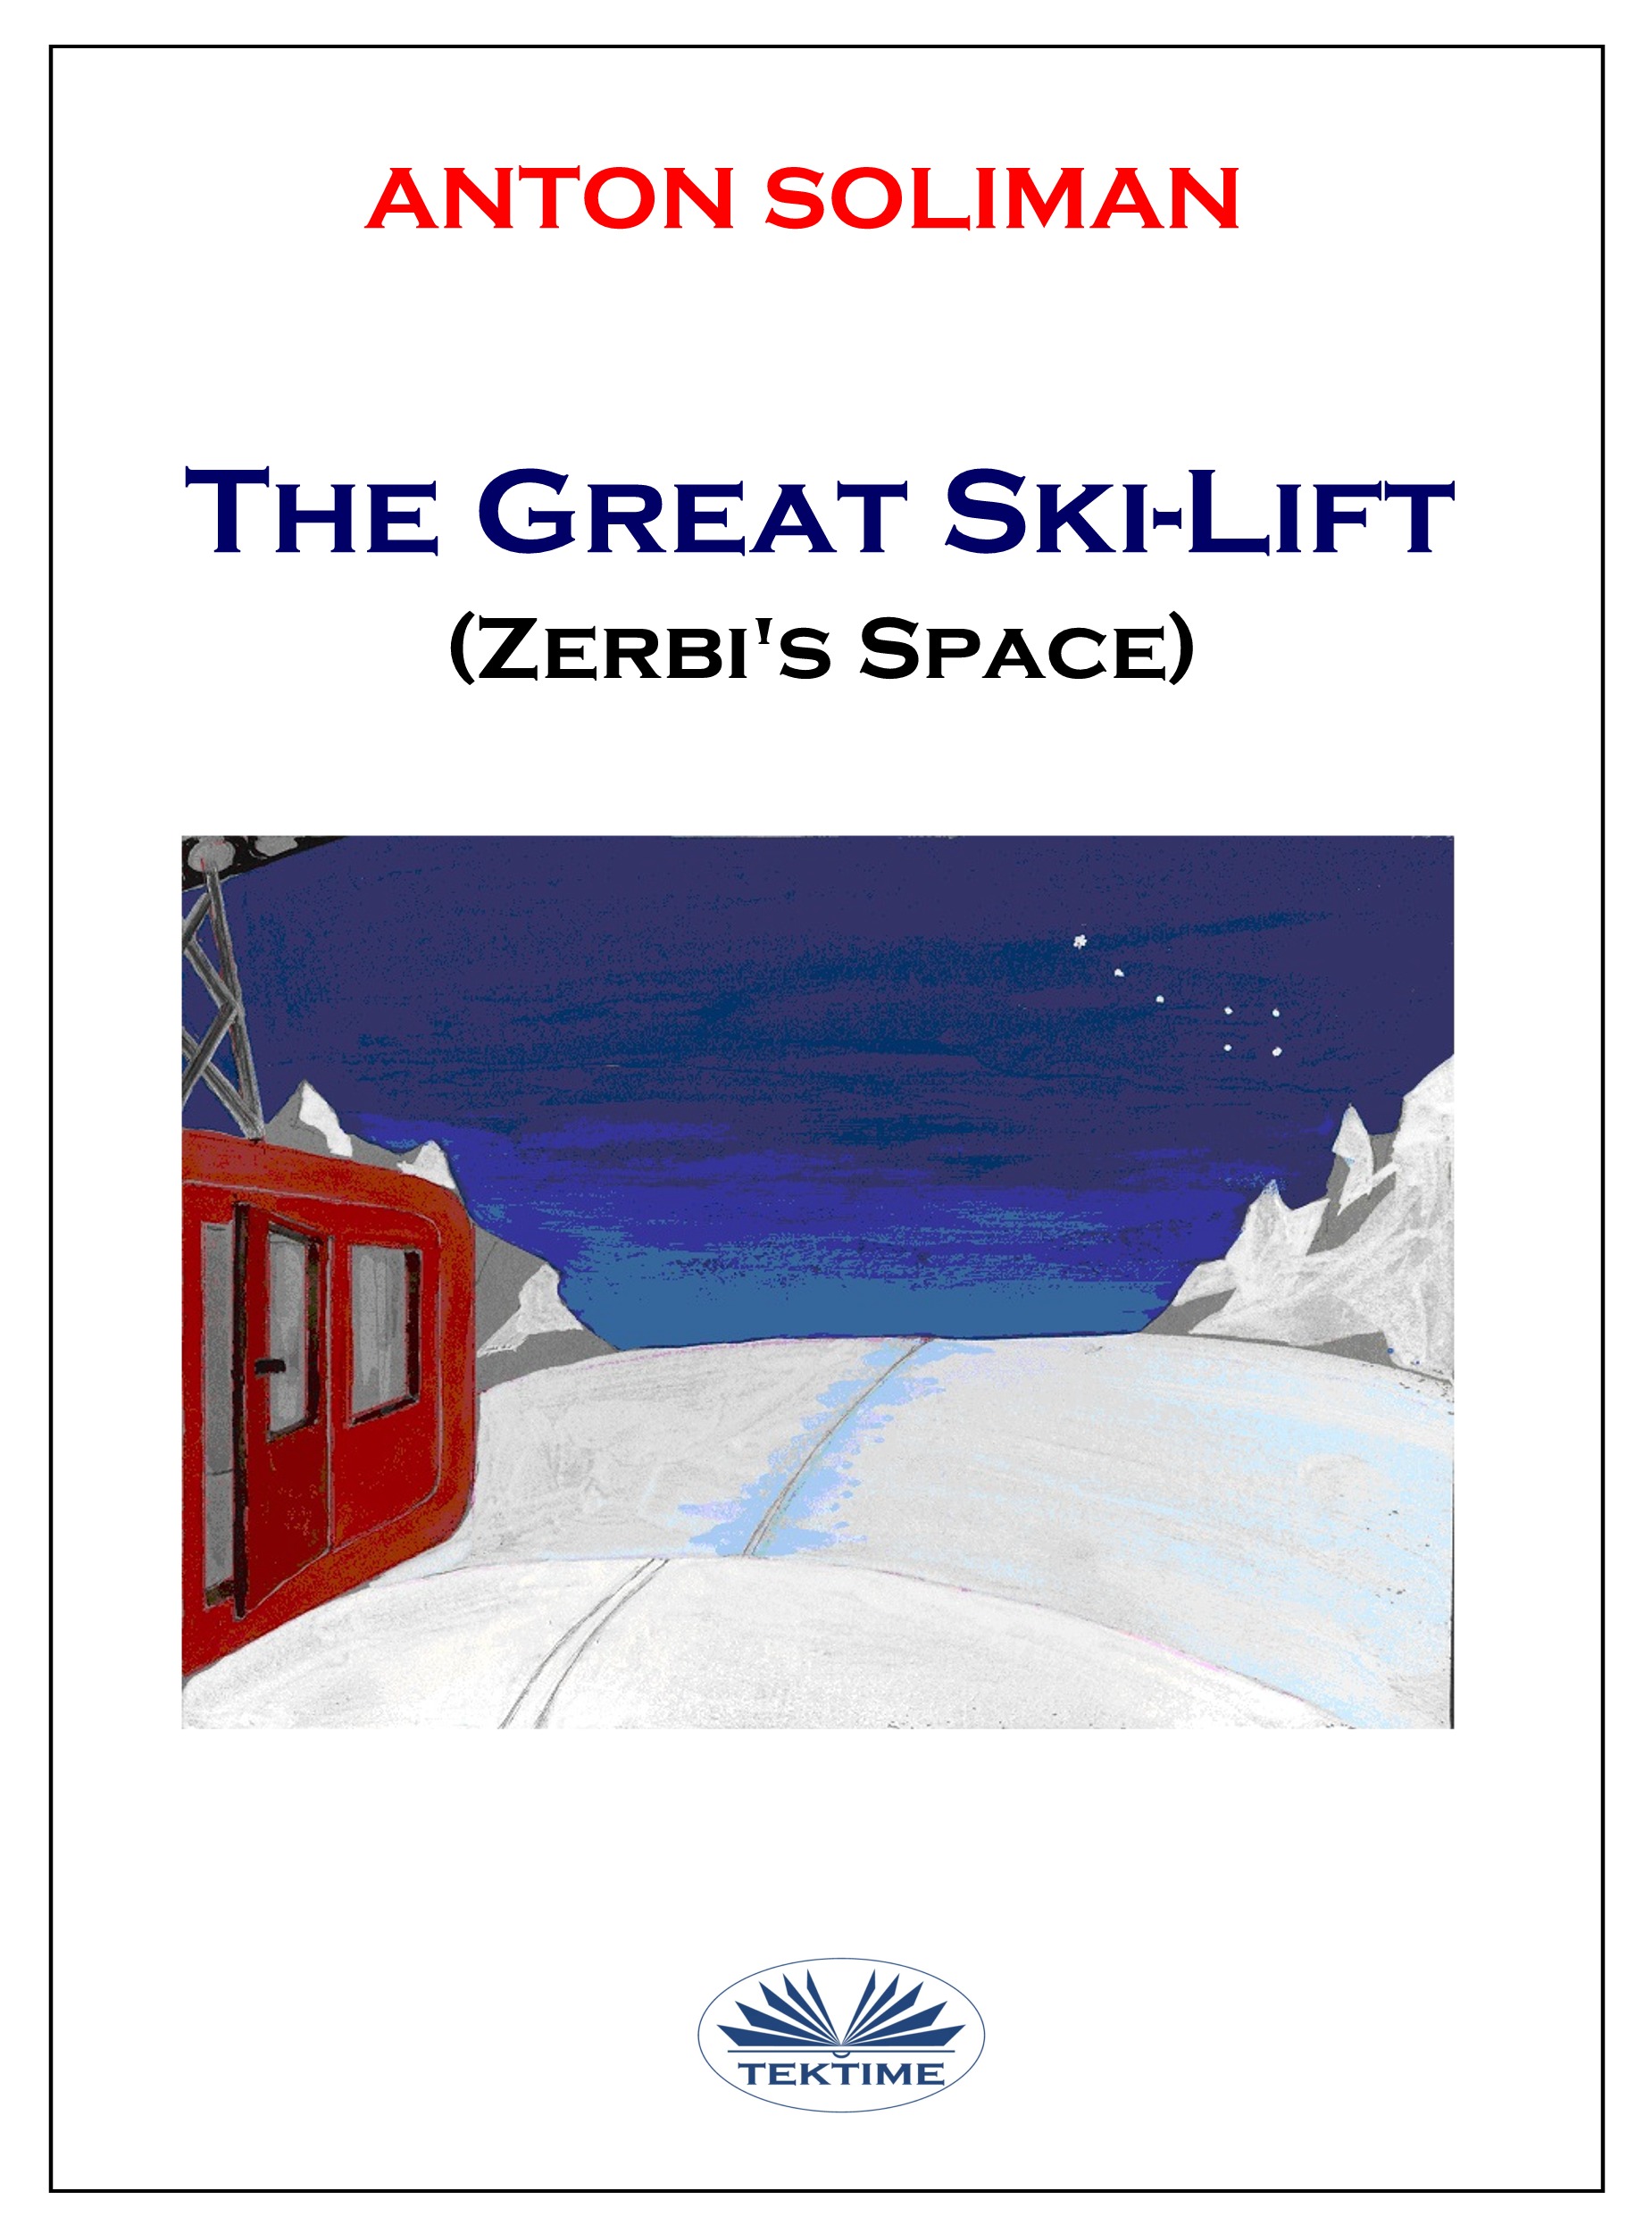 Книга The Great Ski-Lift из серии , созданная Anton Soliman, может относится к жанру Современная зарубежная литература, Зарубежная психология. Стоимость электронной книги The Great Ski-Lift с идентификатором 40851941 составляет 408.79 руб.